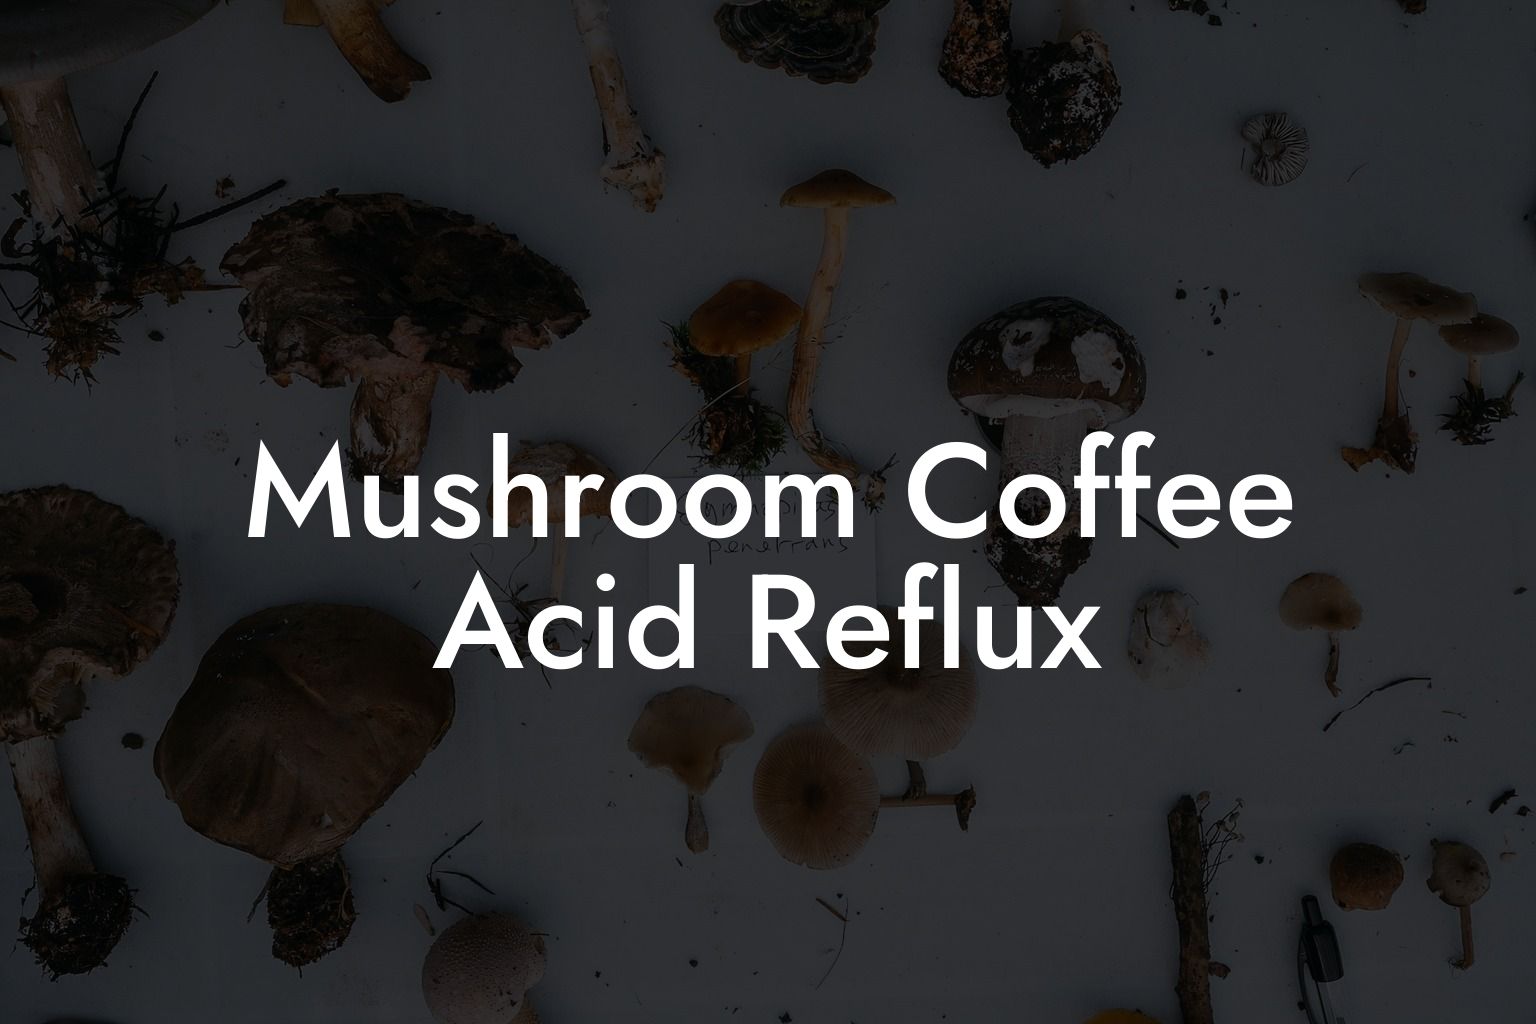 Mushroom Coffee Acid Reflux